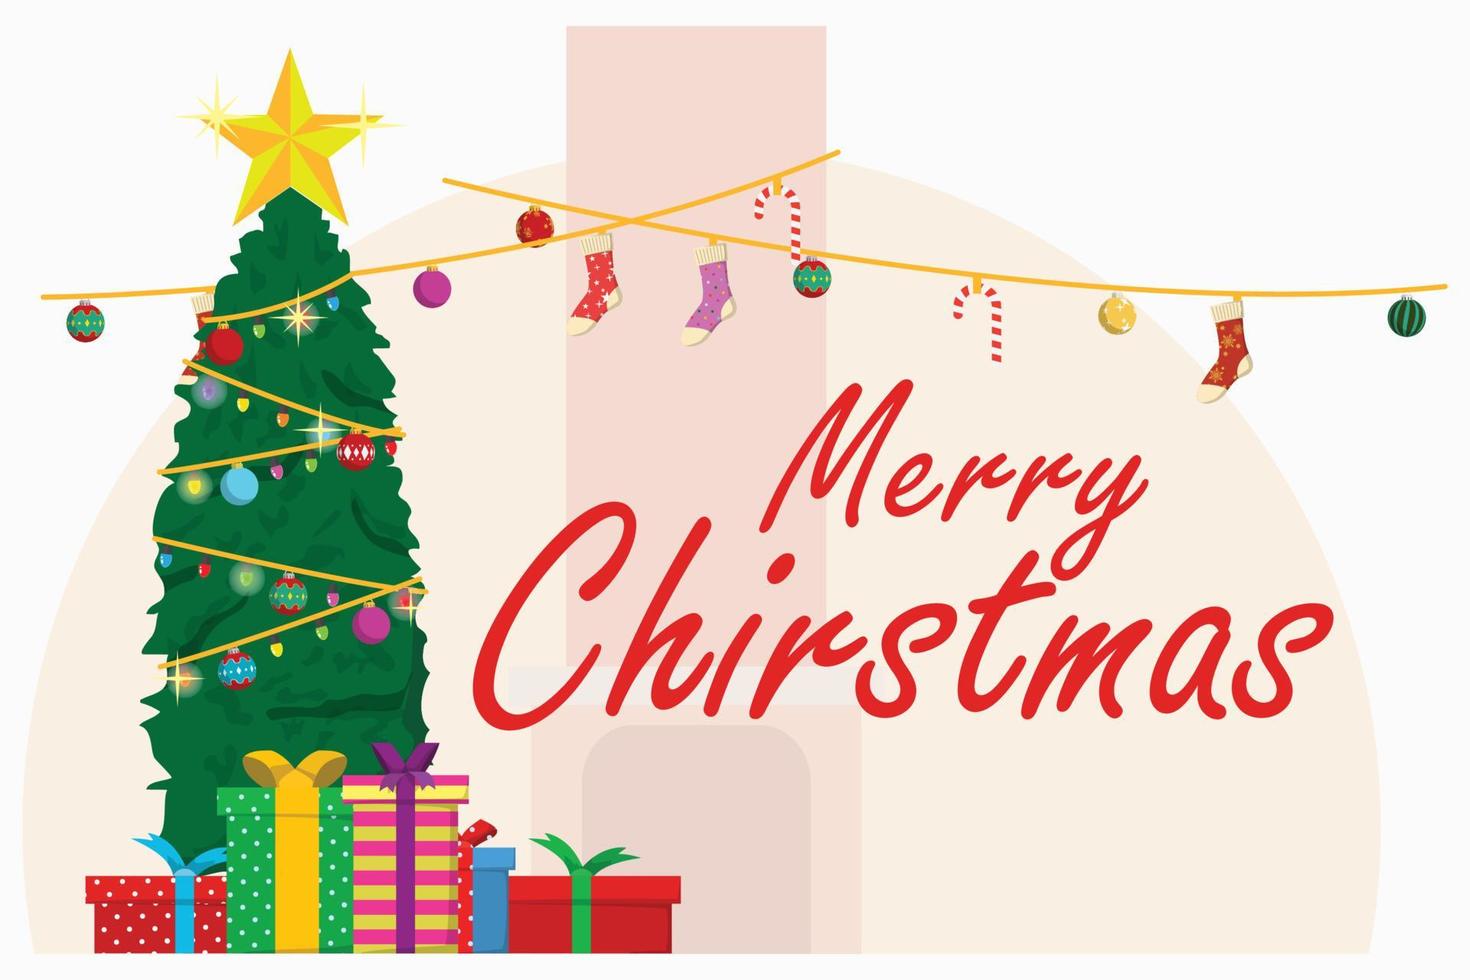 illustratie van een vrolijk Kerstmis met een Kerstmis boom decoratie met fonkelend lichten en kleurrijk cadeaus vector illustratie eps10